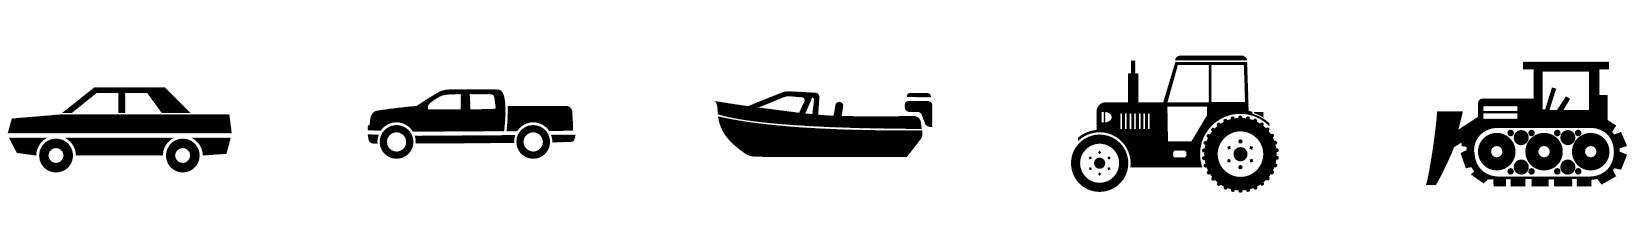 Het zonnepaneel voor een boot is aanbevolen voor auto, pick up, boot, tractor en industriële machines.